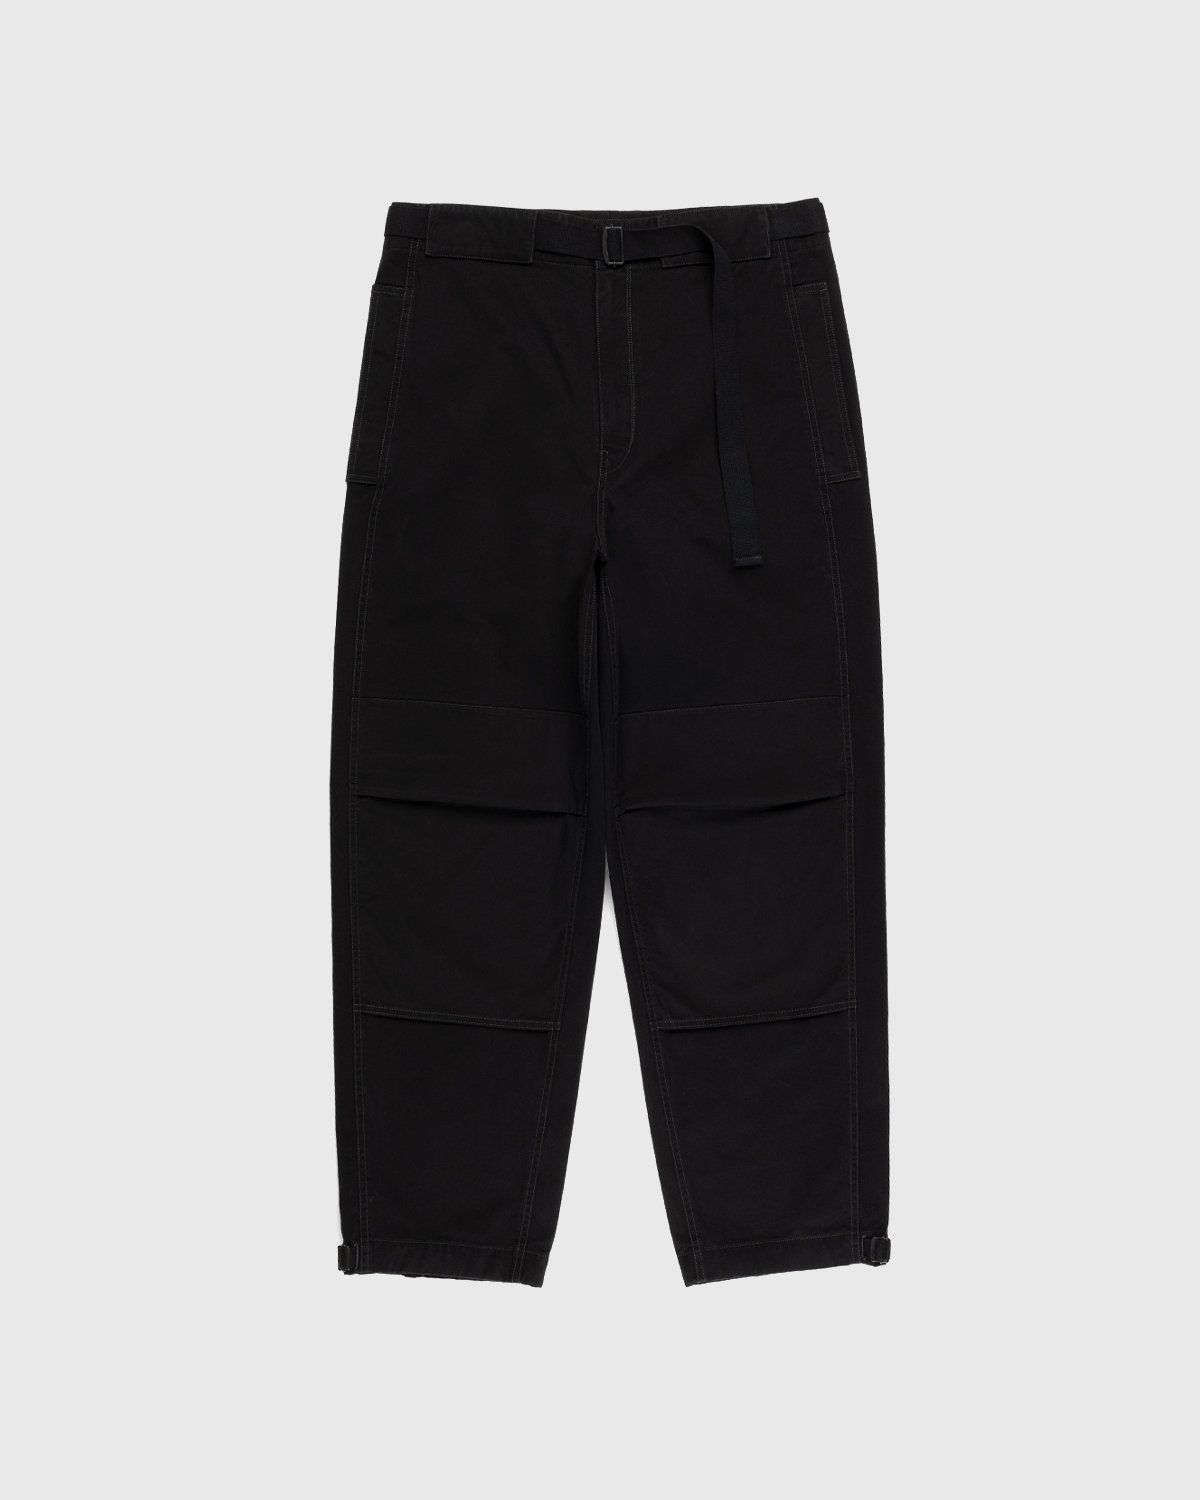 Lemaire – Utility Pants Black - Pants - Black - Image 1